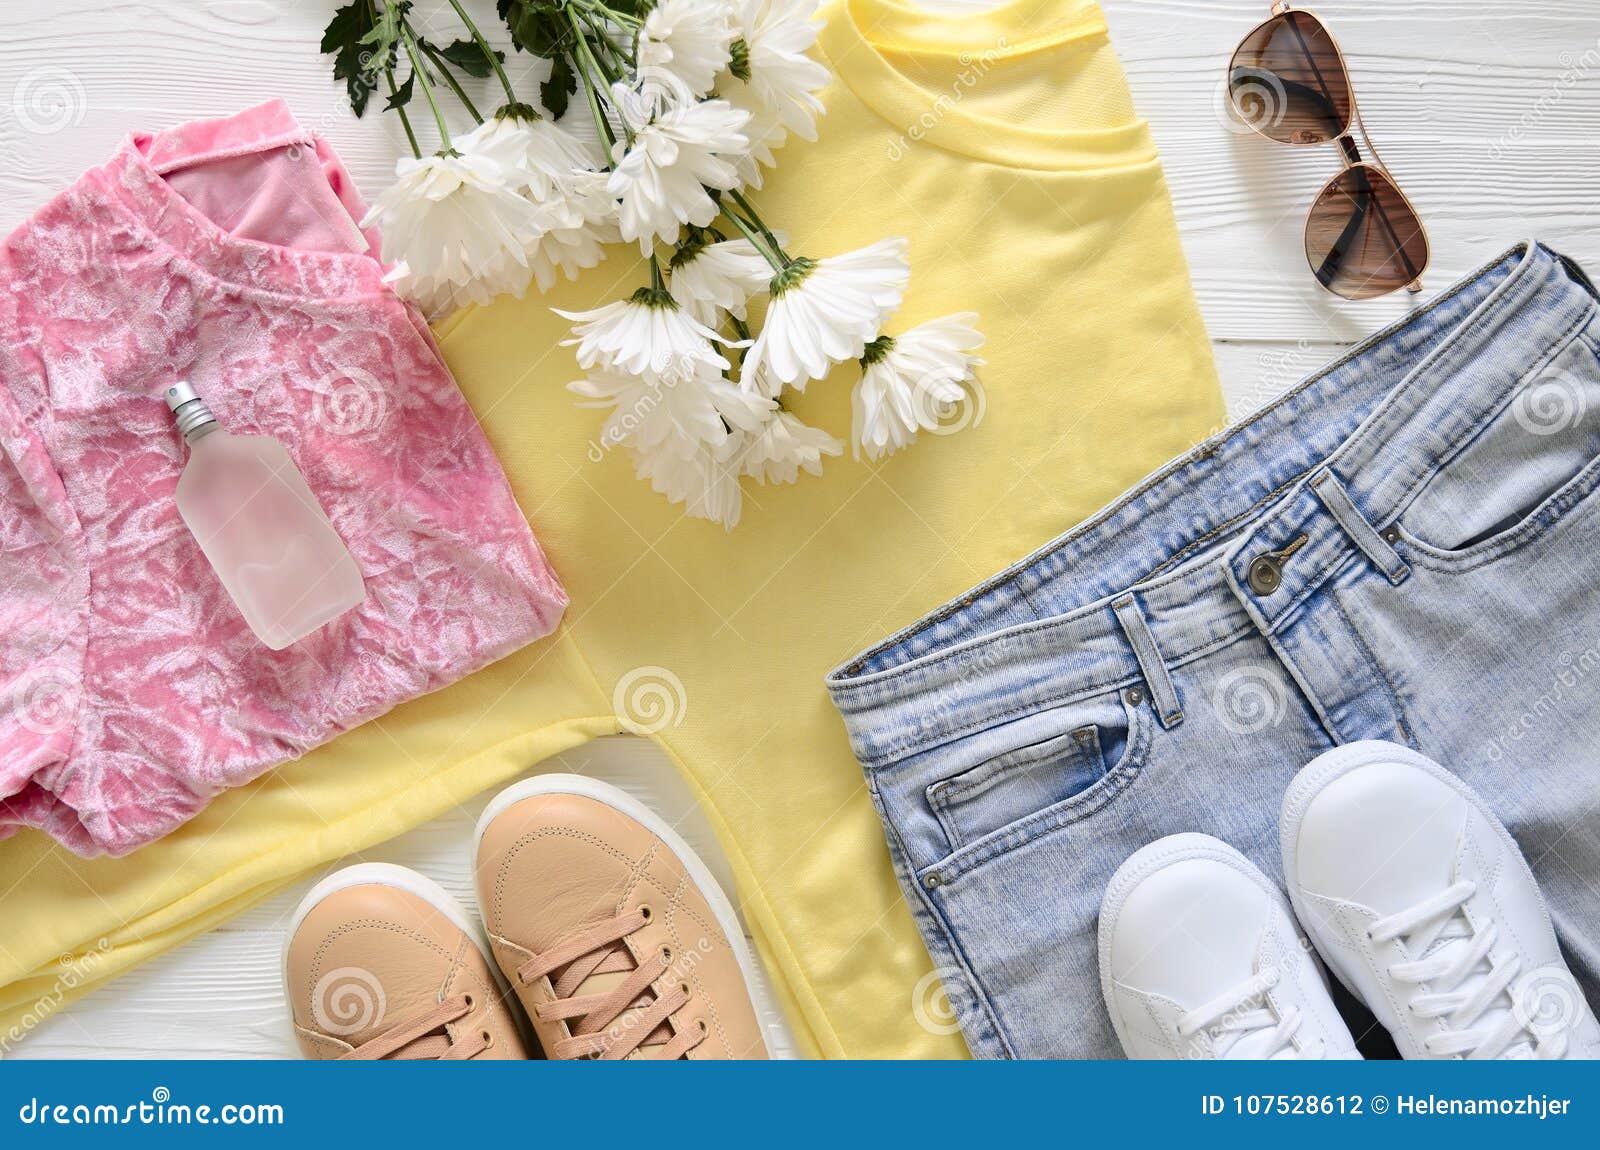 Ropa, Zapatos Y Accesorios De Moda Para Blancos Y Beige de archivo - Imagen de floral, conjunto: 107528612